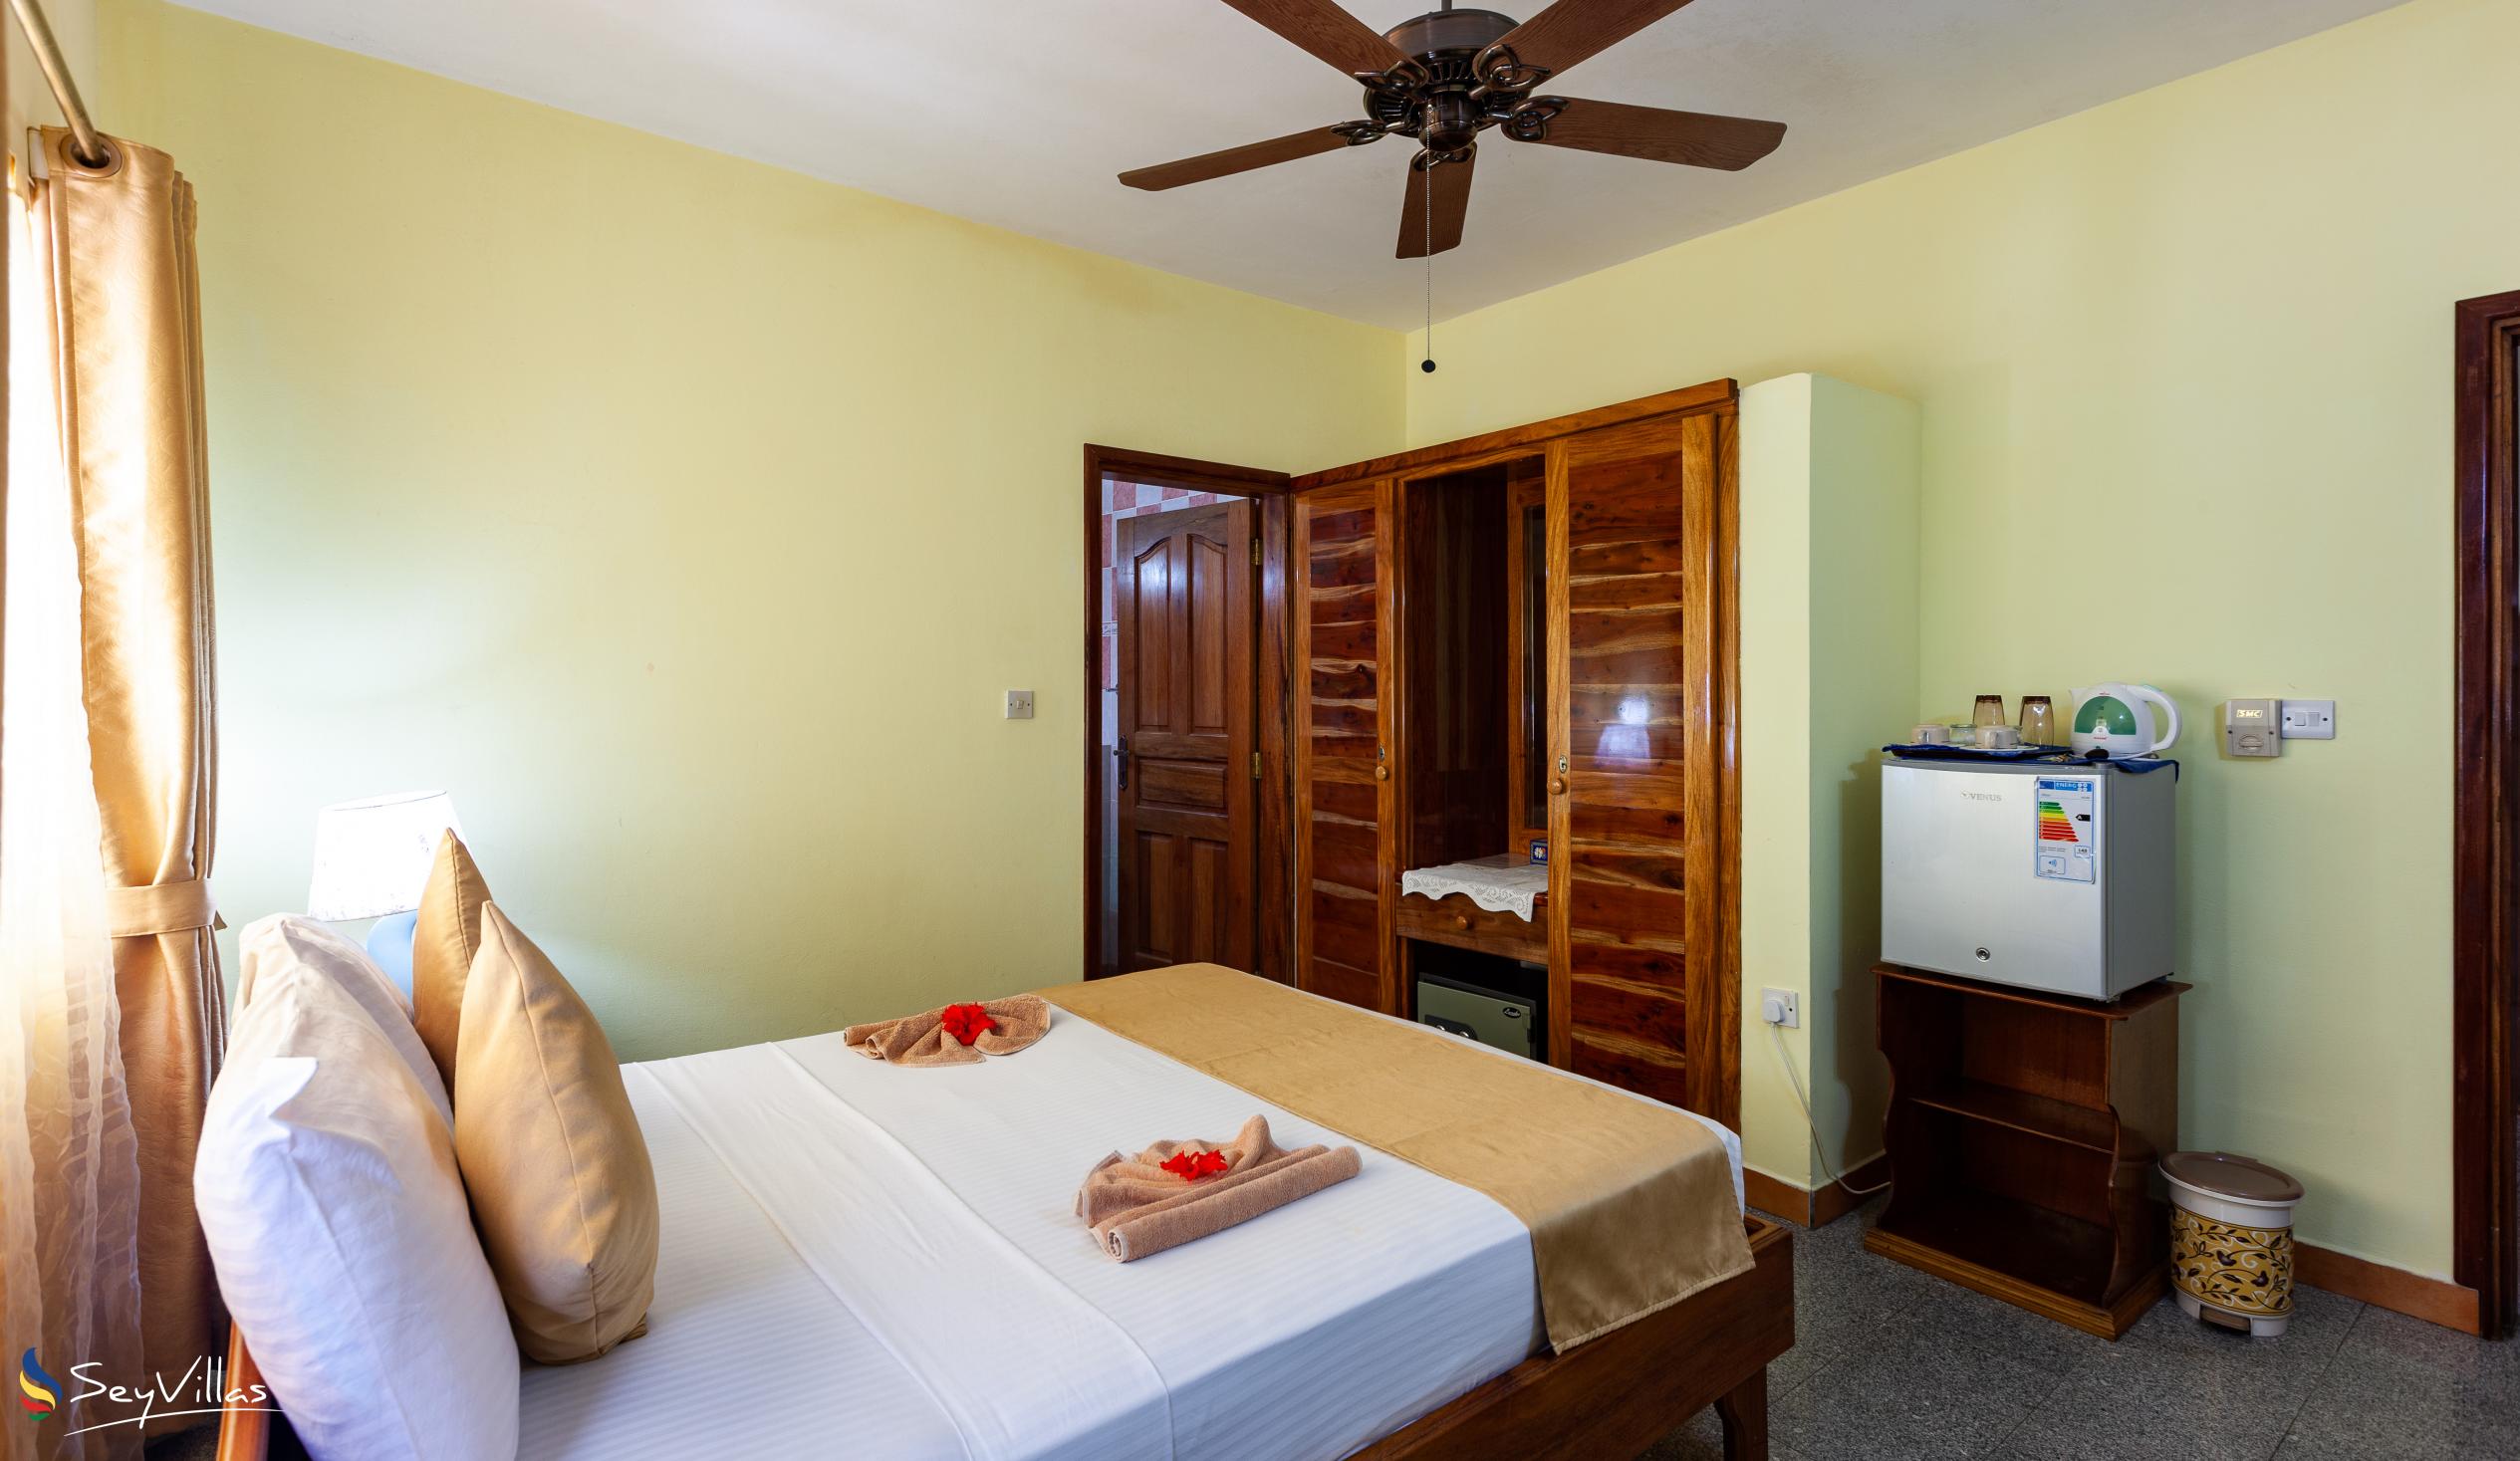 Photo 89: Villa Bananier - Standard Room - Praslin (Seychelles)